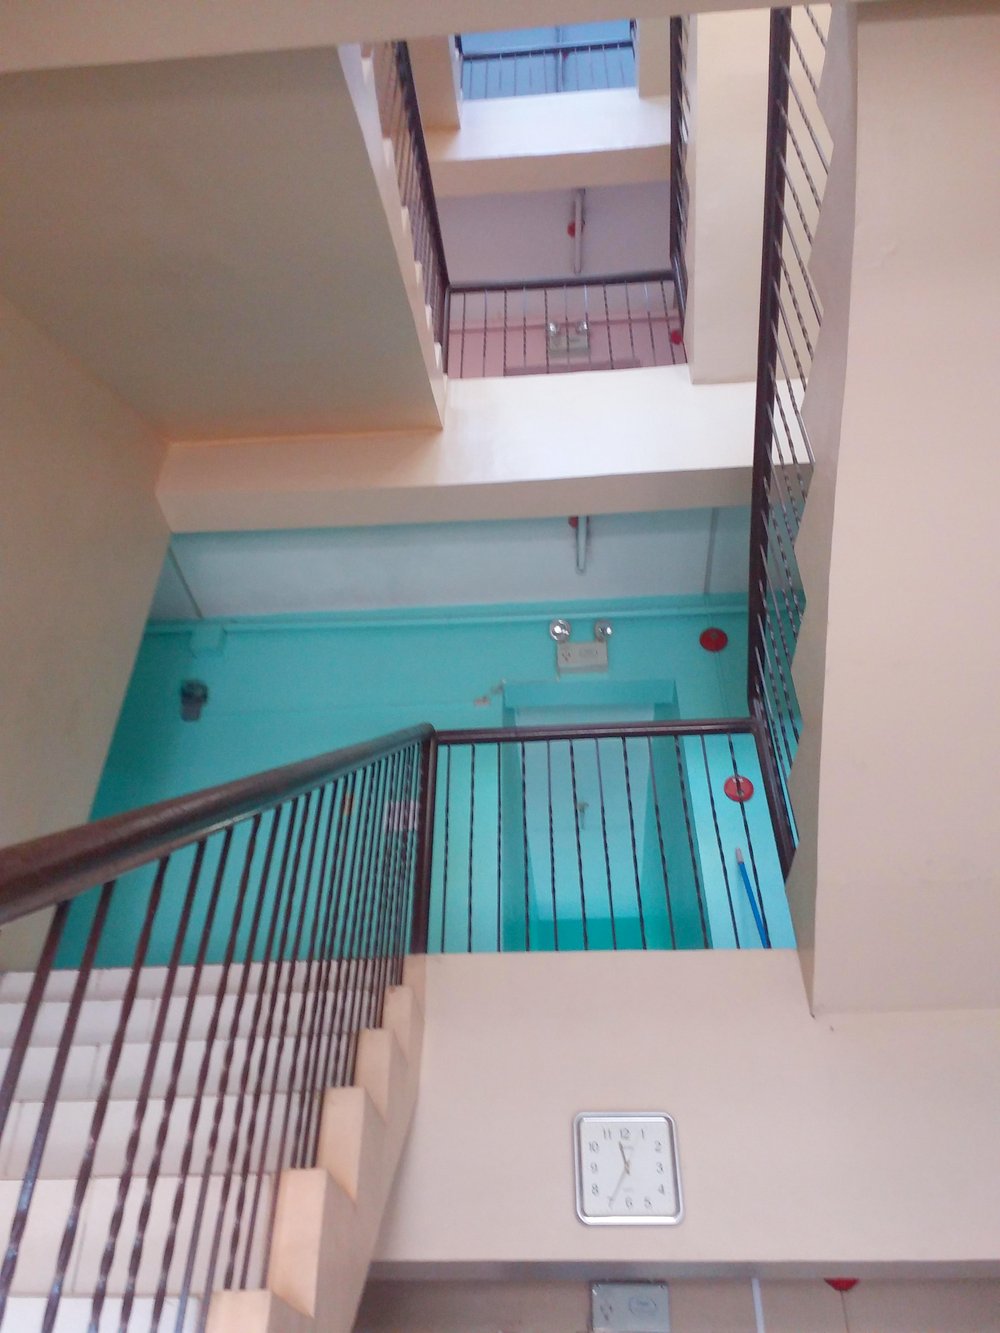 HONEST Reviews of Teresita's Dormtel & Hostel in Cebu City 2021 | Price